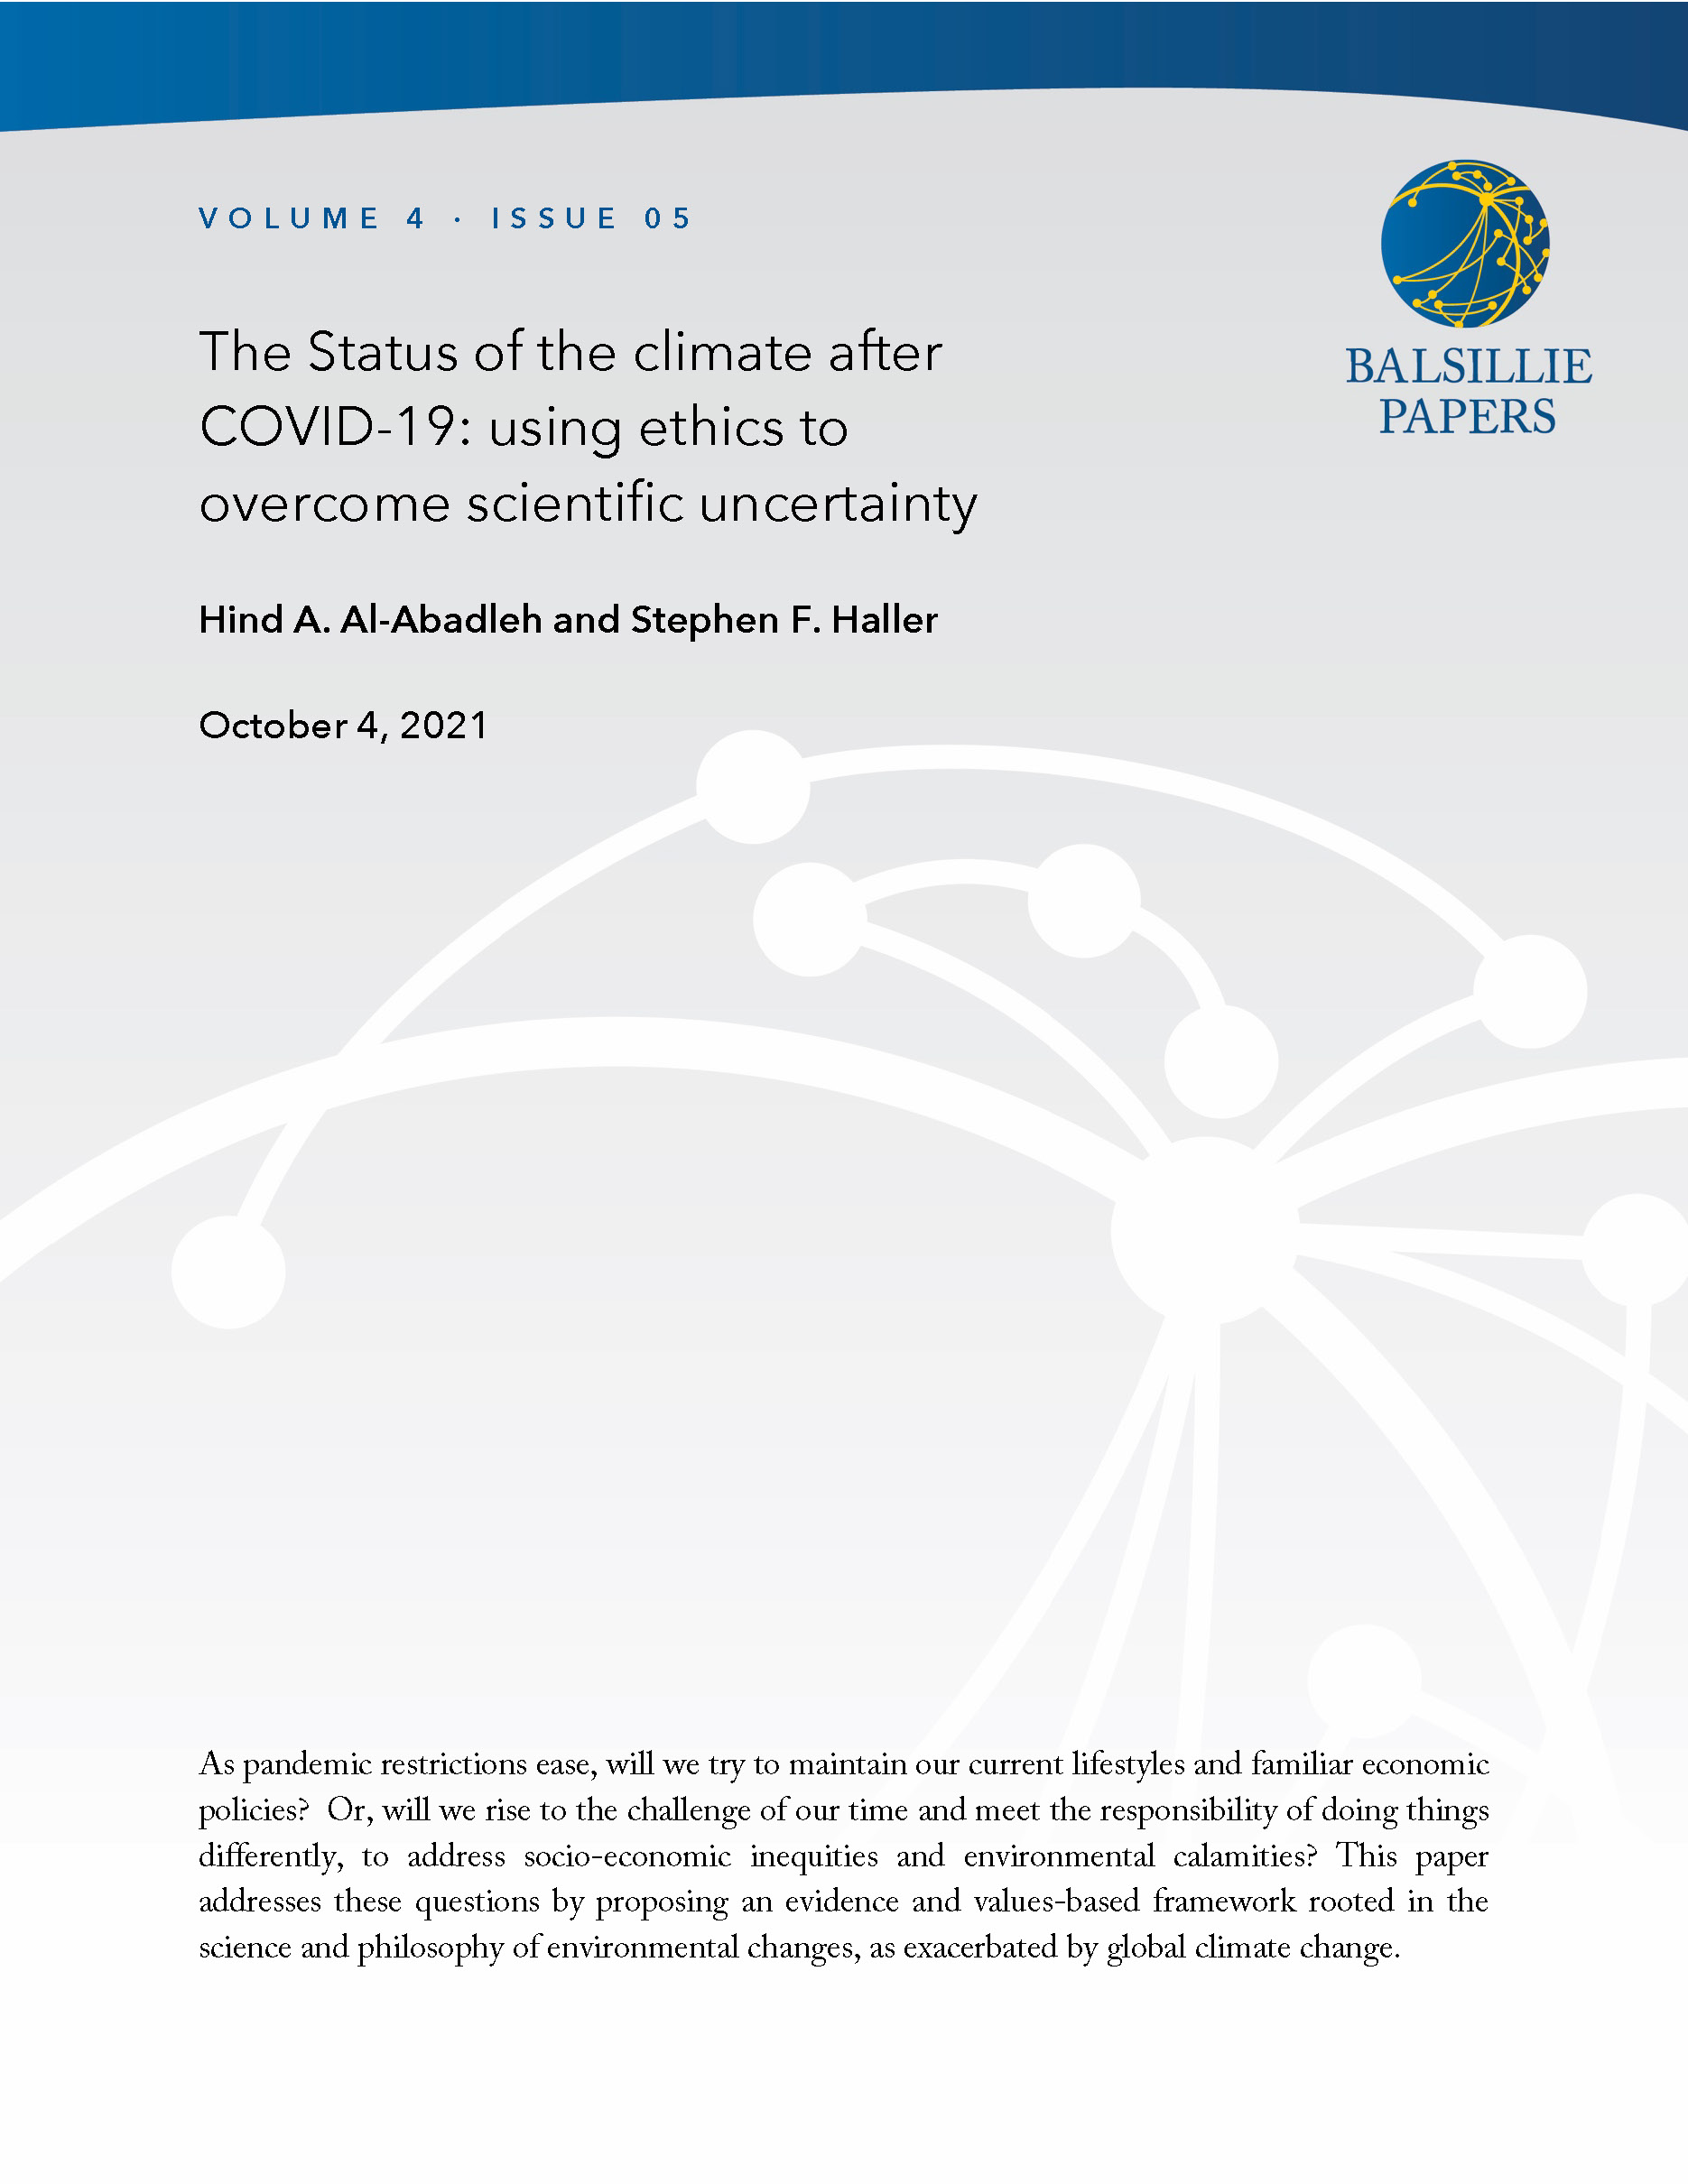 Balsillie Paper - Al-Abadleh and Haller COVER